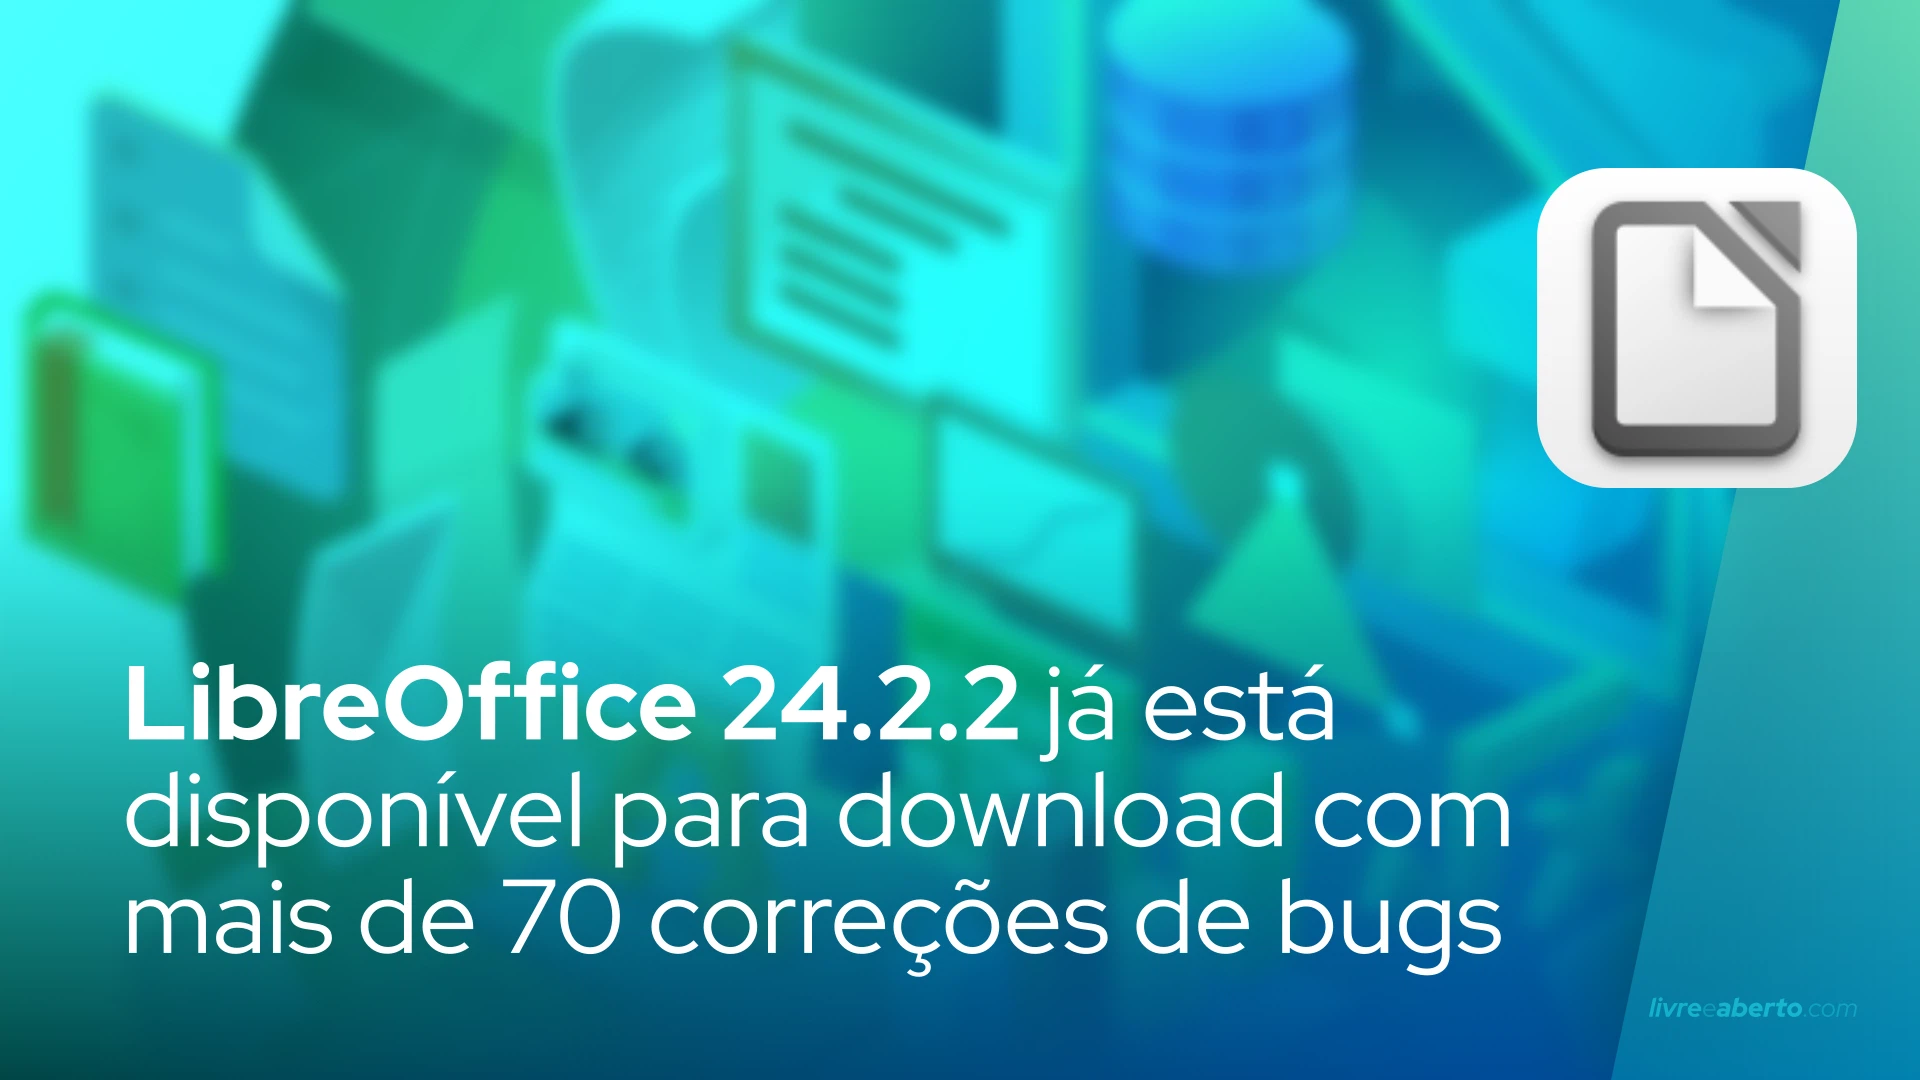 LibreOffice 24.2.2 já está disponível para download com mais de 70 correções de bugs